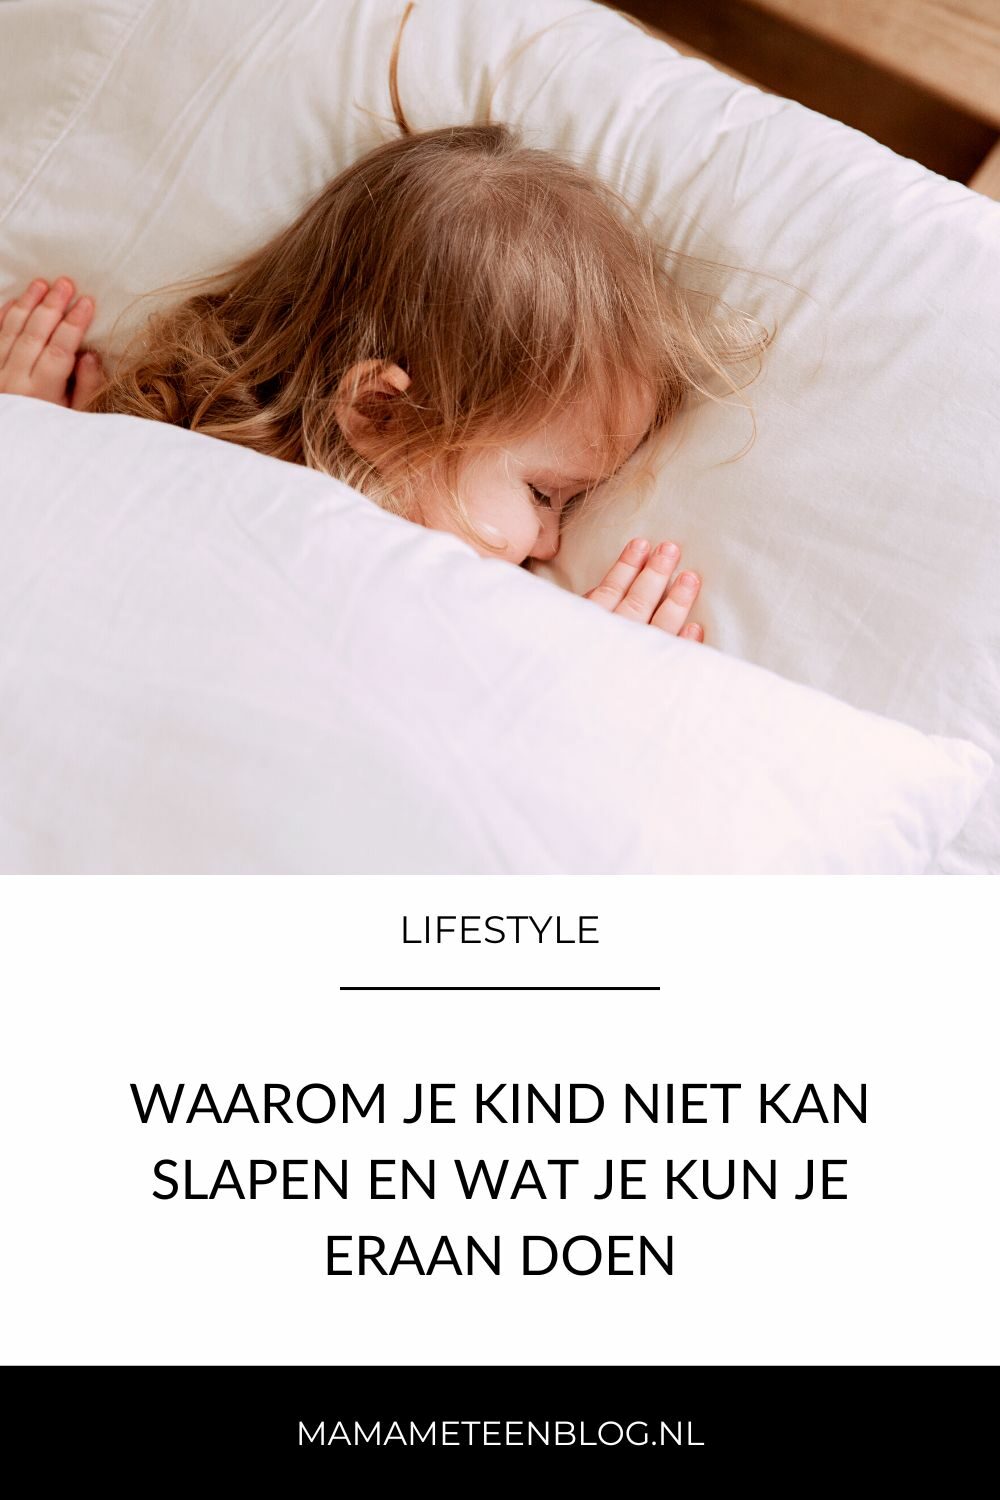 Waarom je kind niet kan slapen en wat je kun je eraan doen mamameteenblog.nl